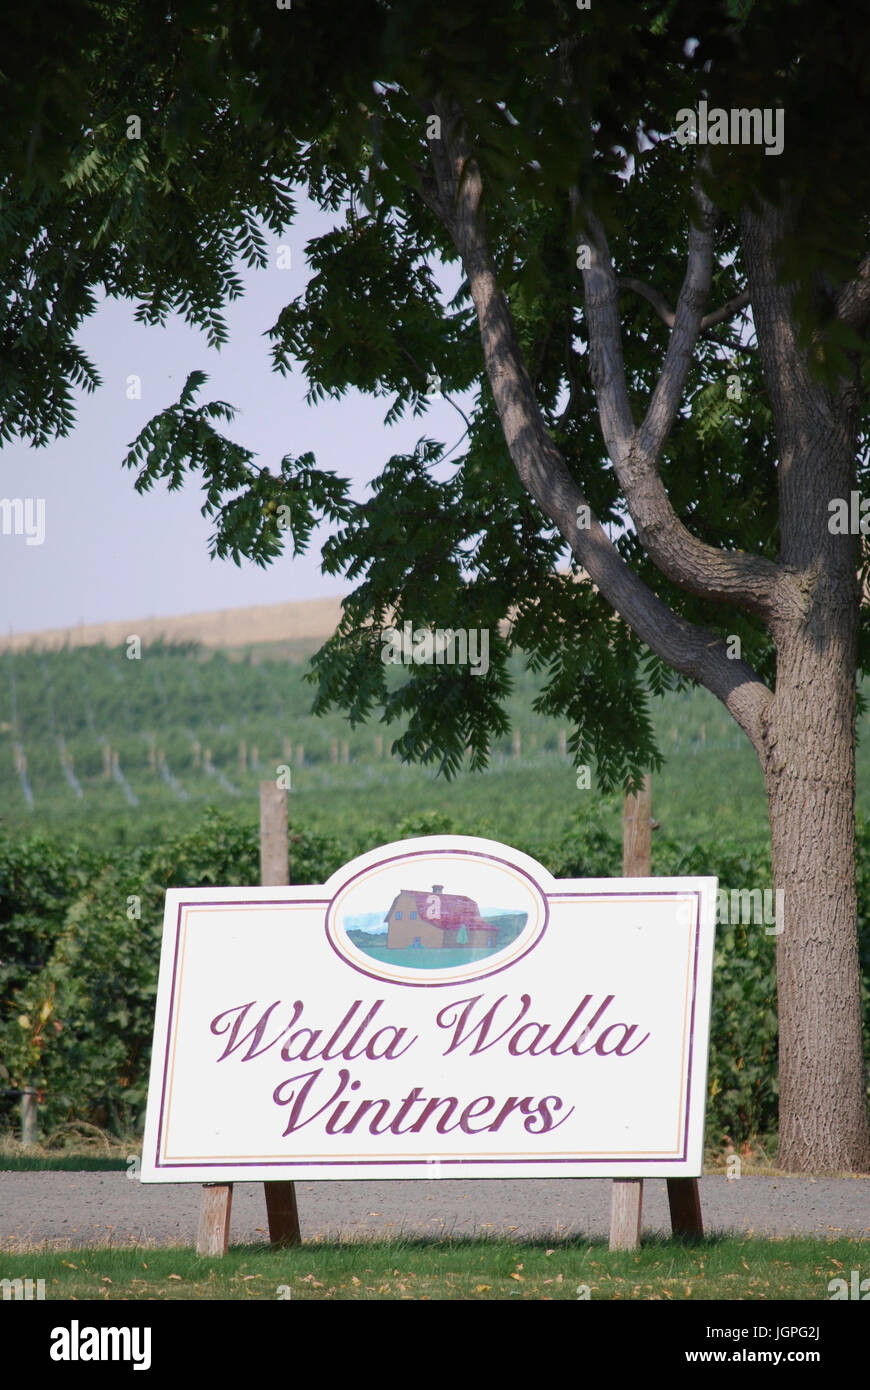 walla walla vintners winery and vineyard sign outdoors, Walla Walla, WA. USA Stock Photo